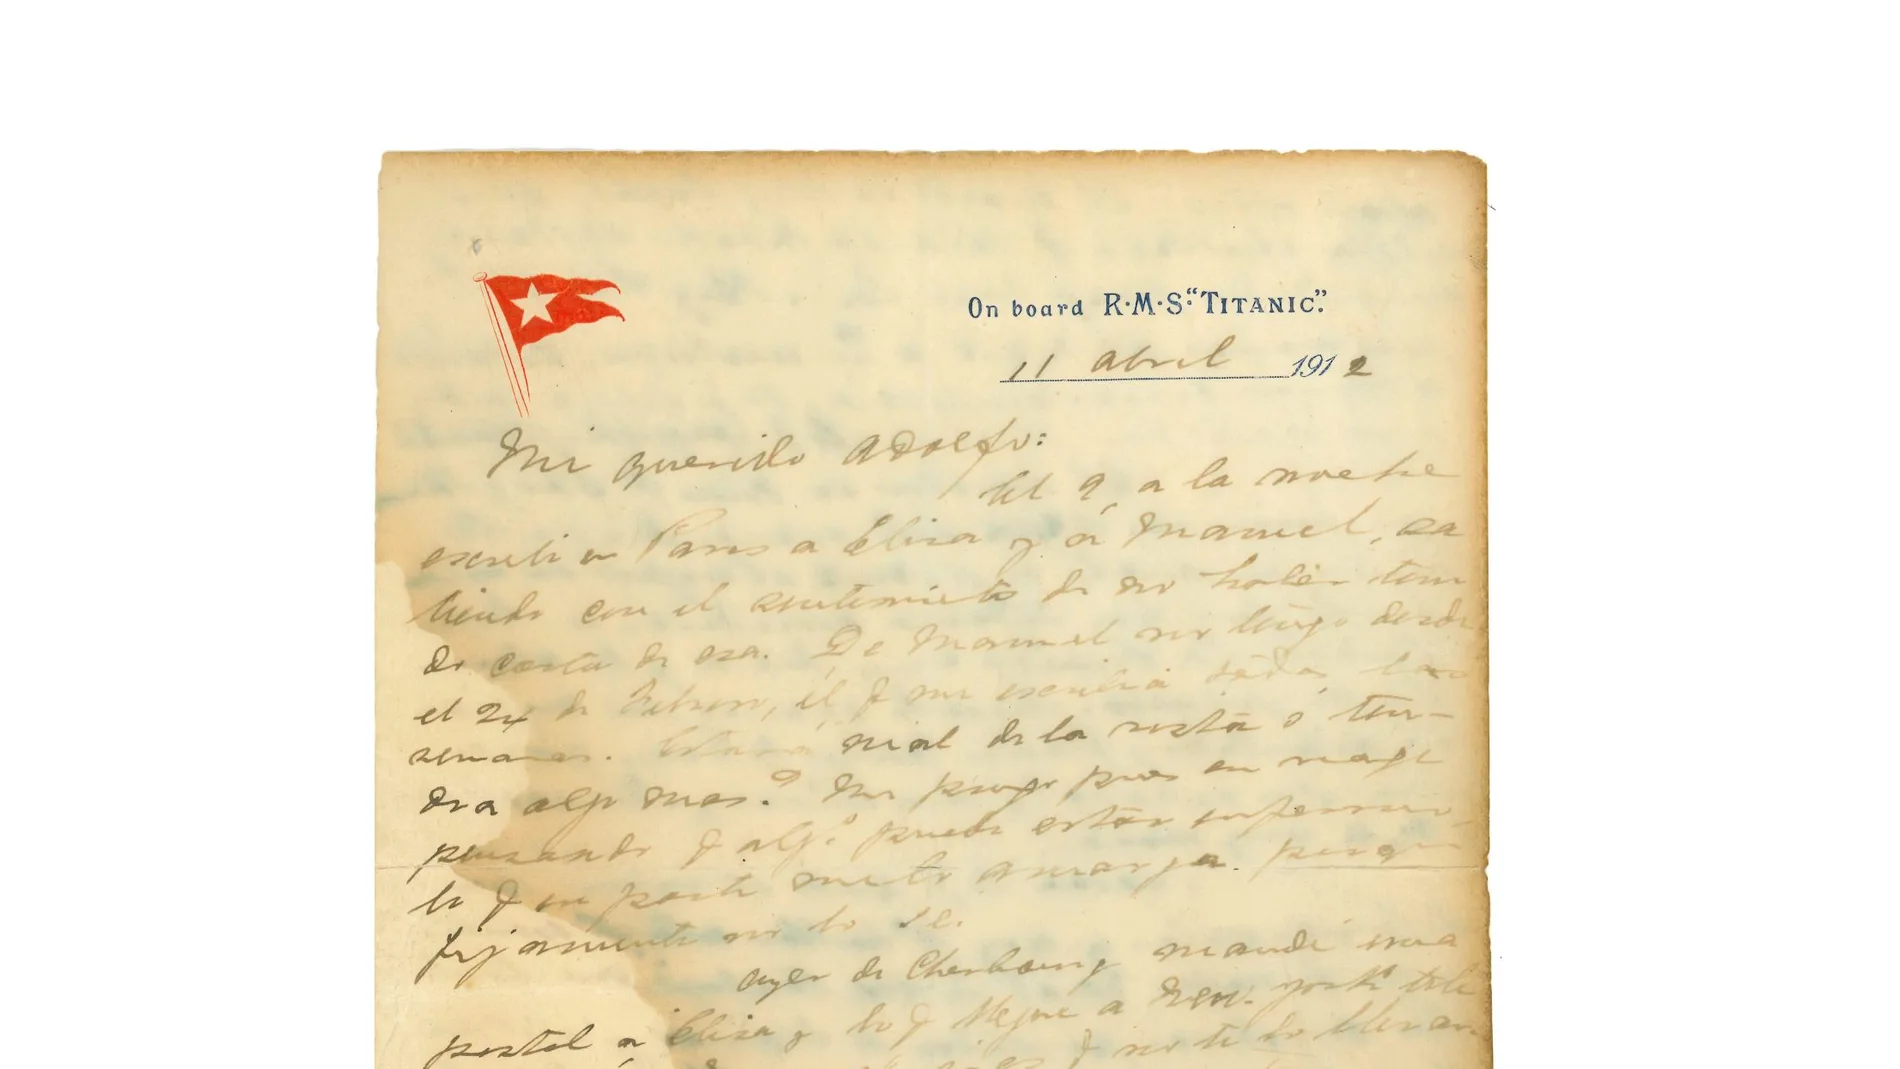 La carta que el uruguayo escribió a su hermano desde el Titanic